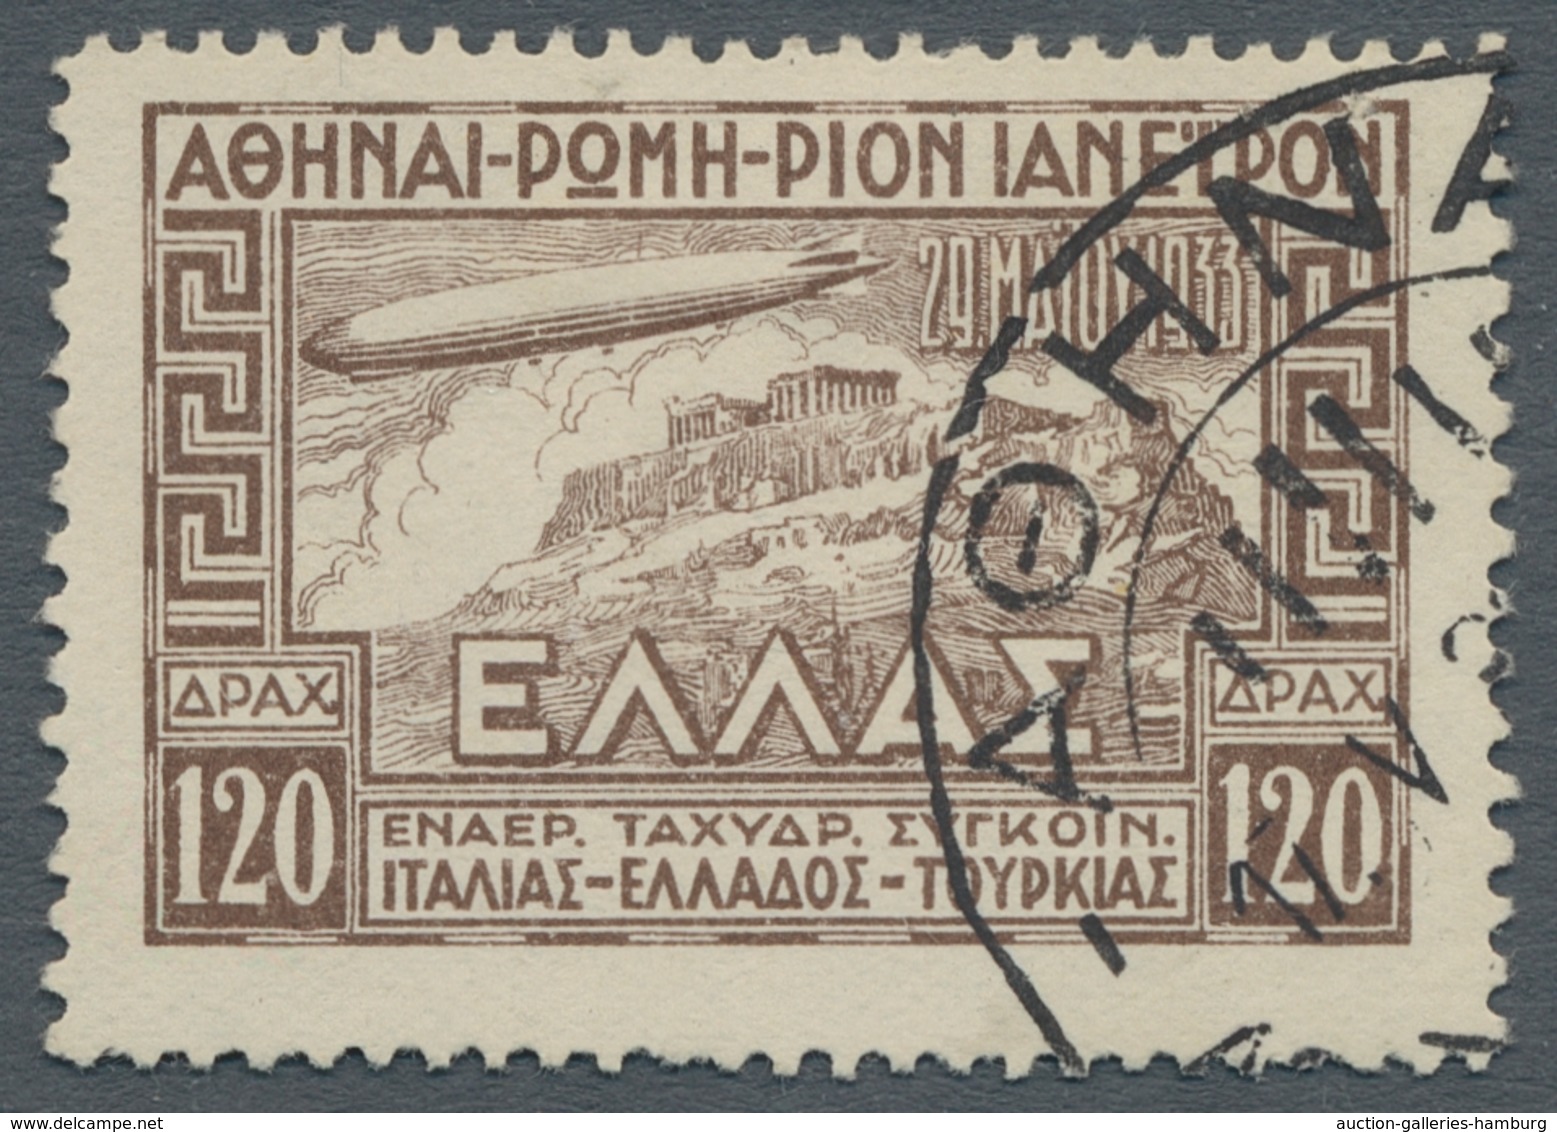 Nachlässe: GRIECHENLAND 1861-1970: Sammlung ab der ersten Ausgabe mit Mi.Nr. 1 (Attest), breitrandig